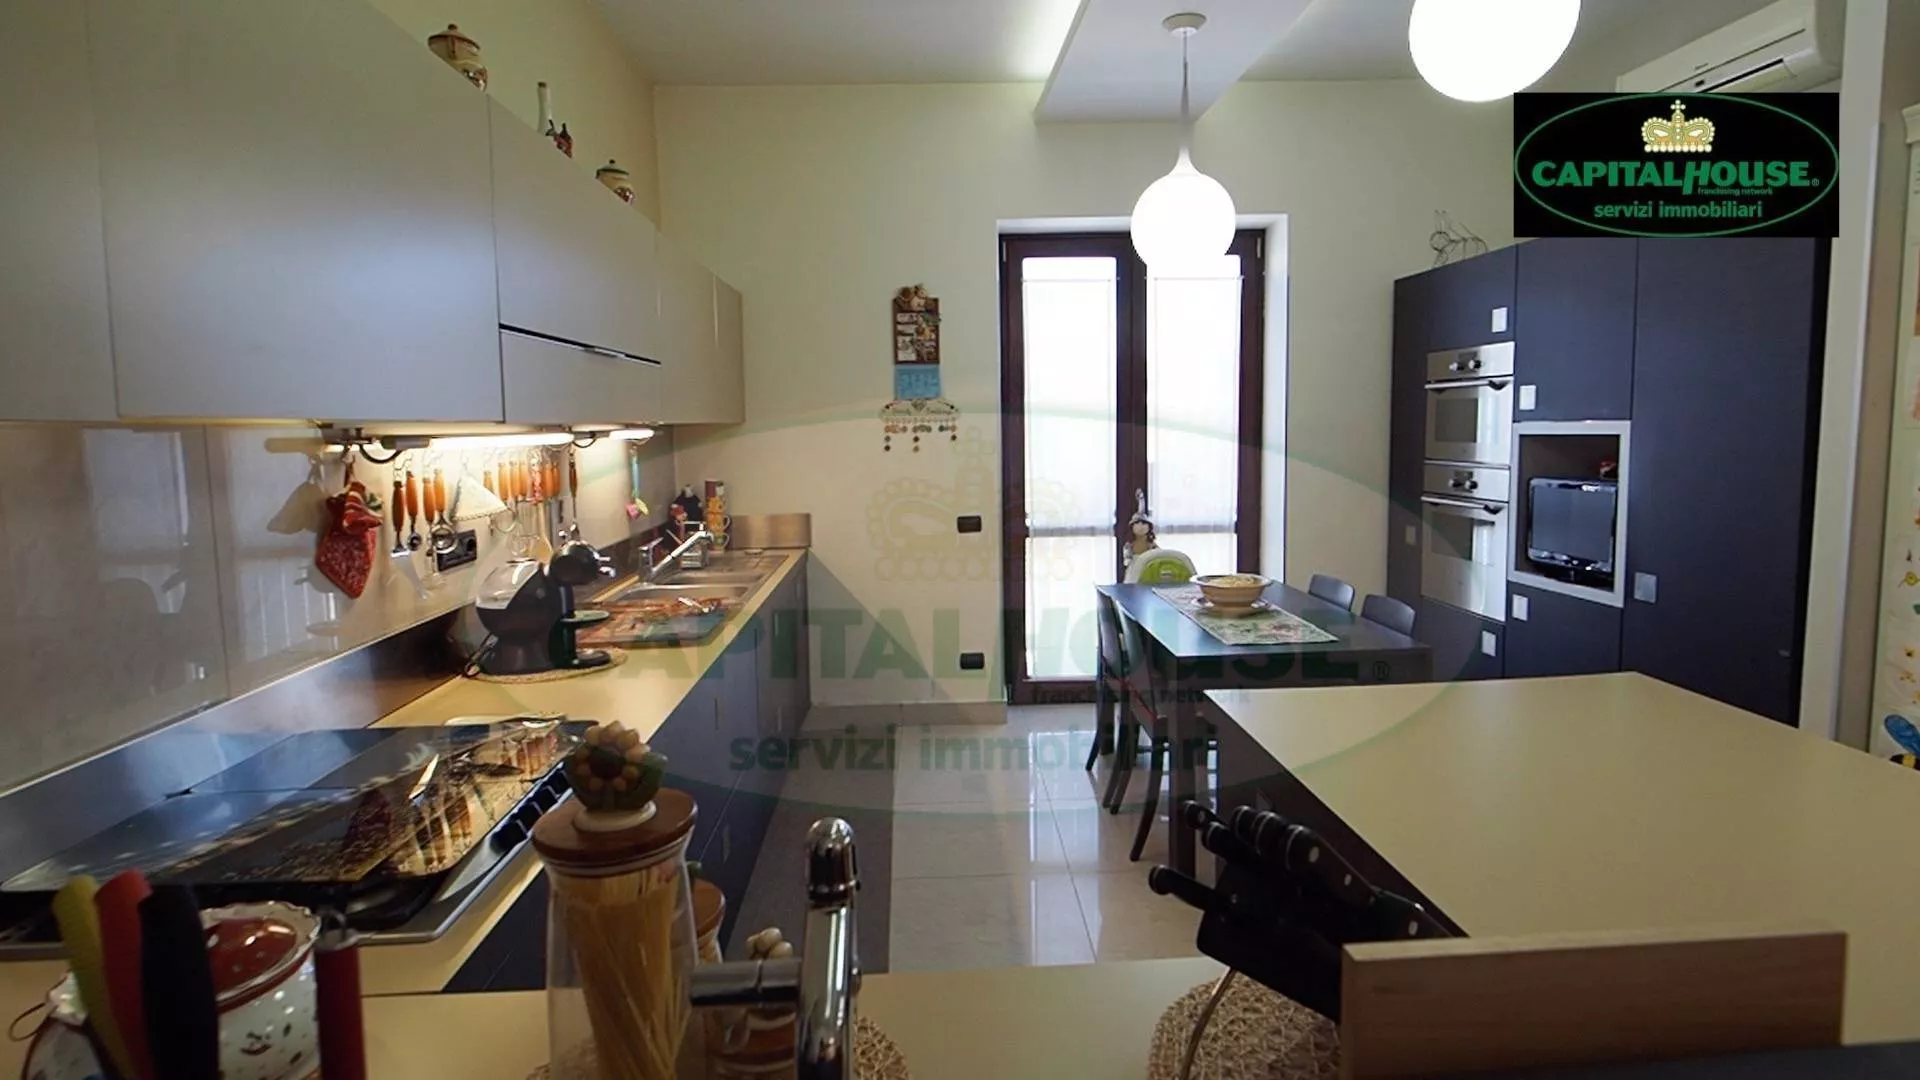 Immagine per Appartamento in vendita a Marigliano via Salvator Rosa